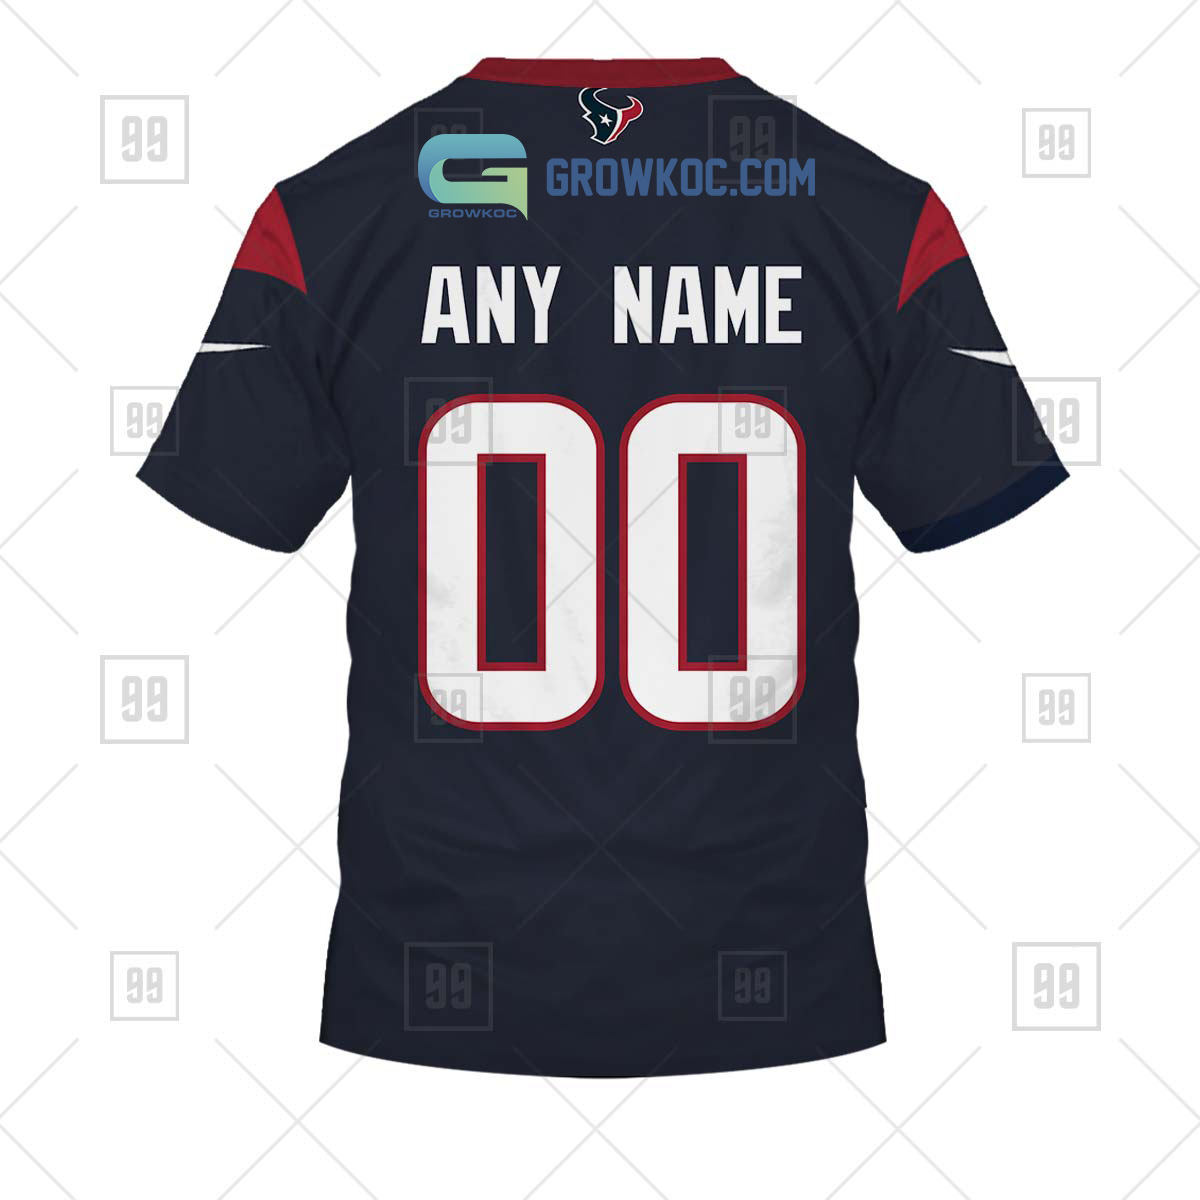 Houston Texans NFL Custom Name Baseball Jersey Shirt Gift For Men